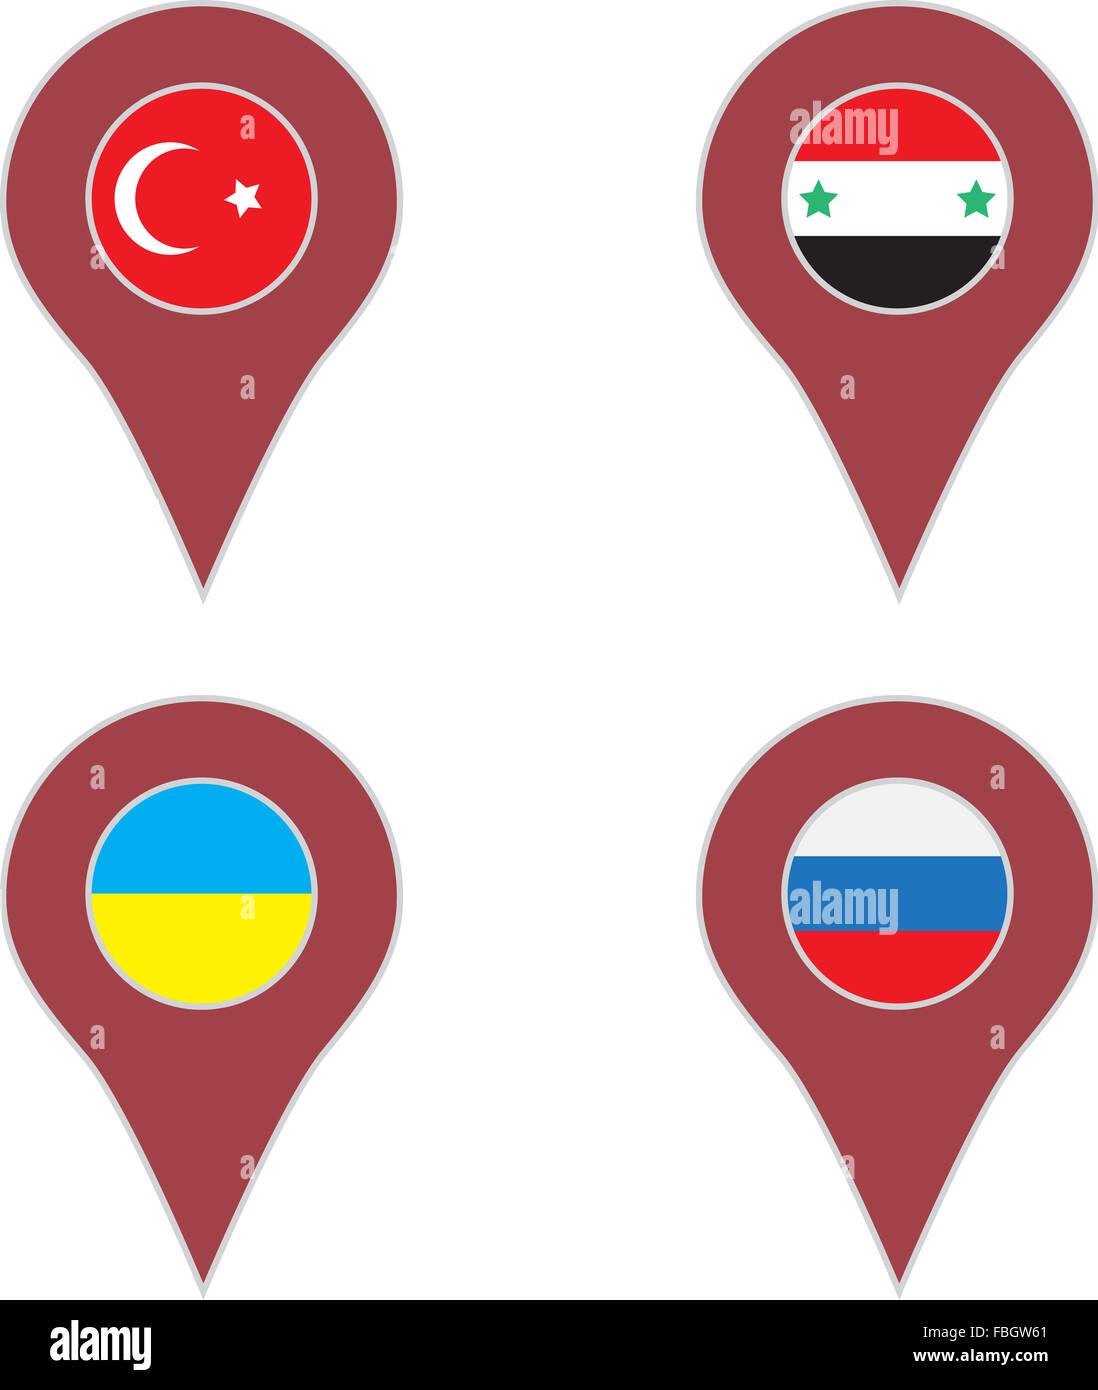 PIN-Standort-Land-Set. Türkei und Syrien, Ukraine und Russland. Vektor-Kunst-abstrakte ausgefallene Mode-illustration Stockfoto